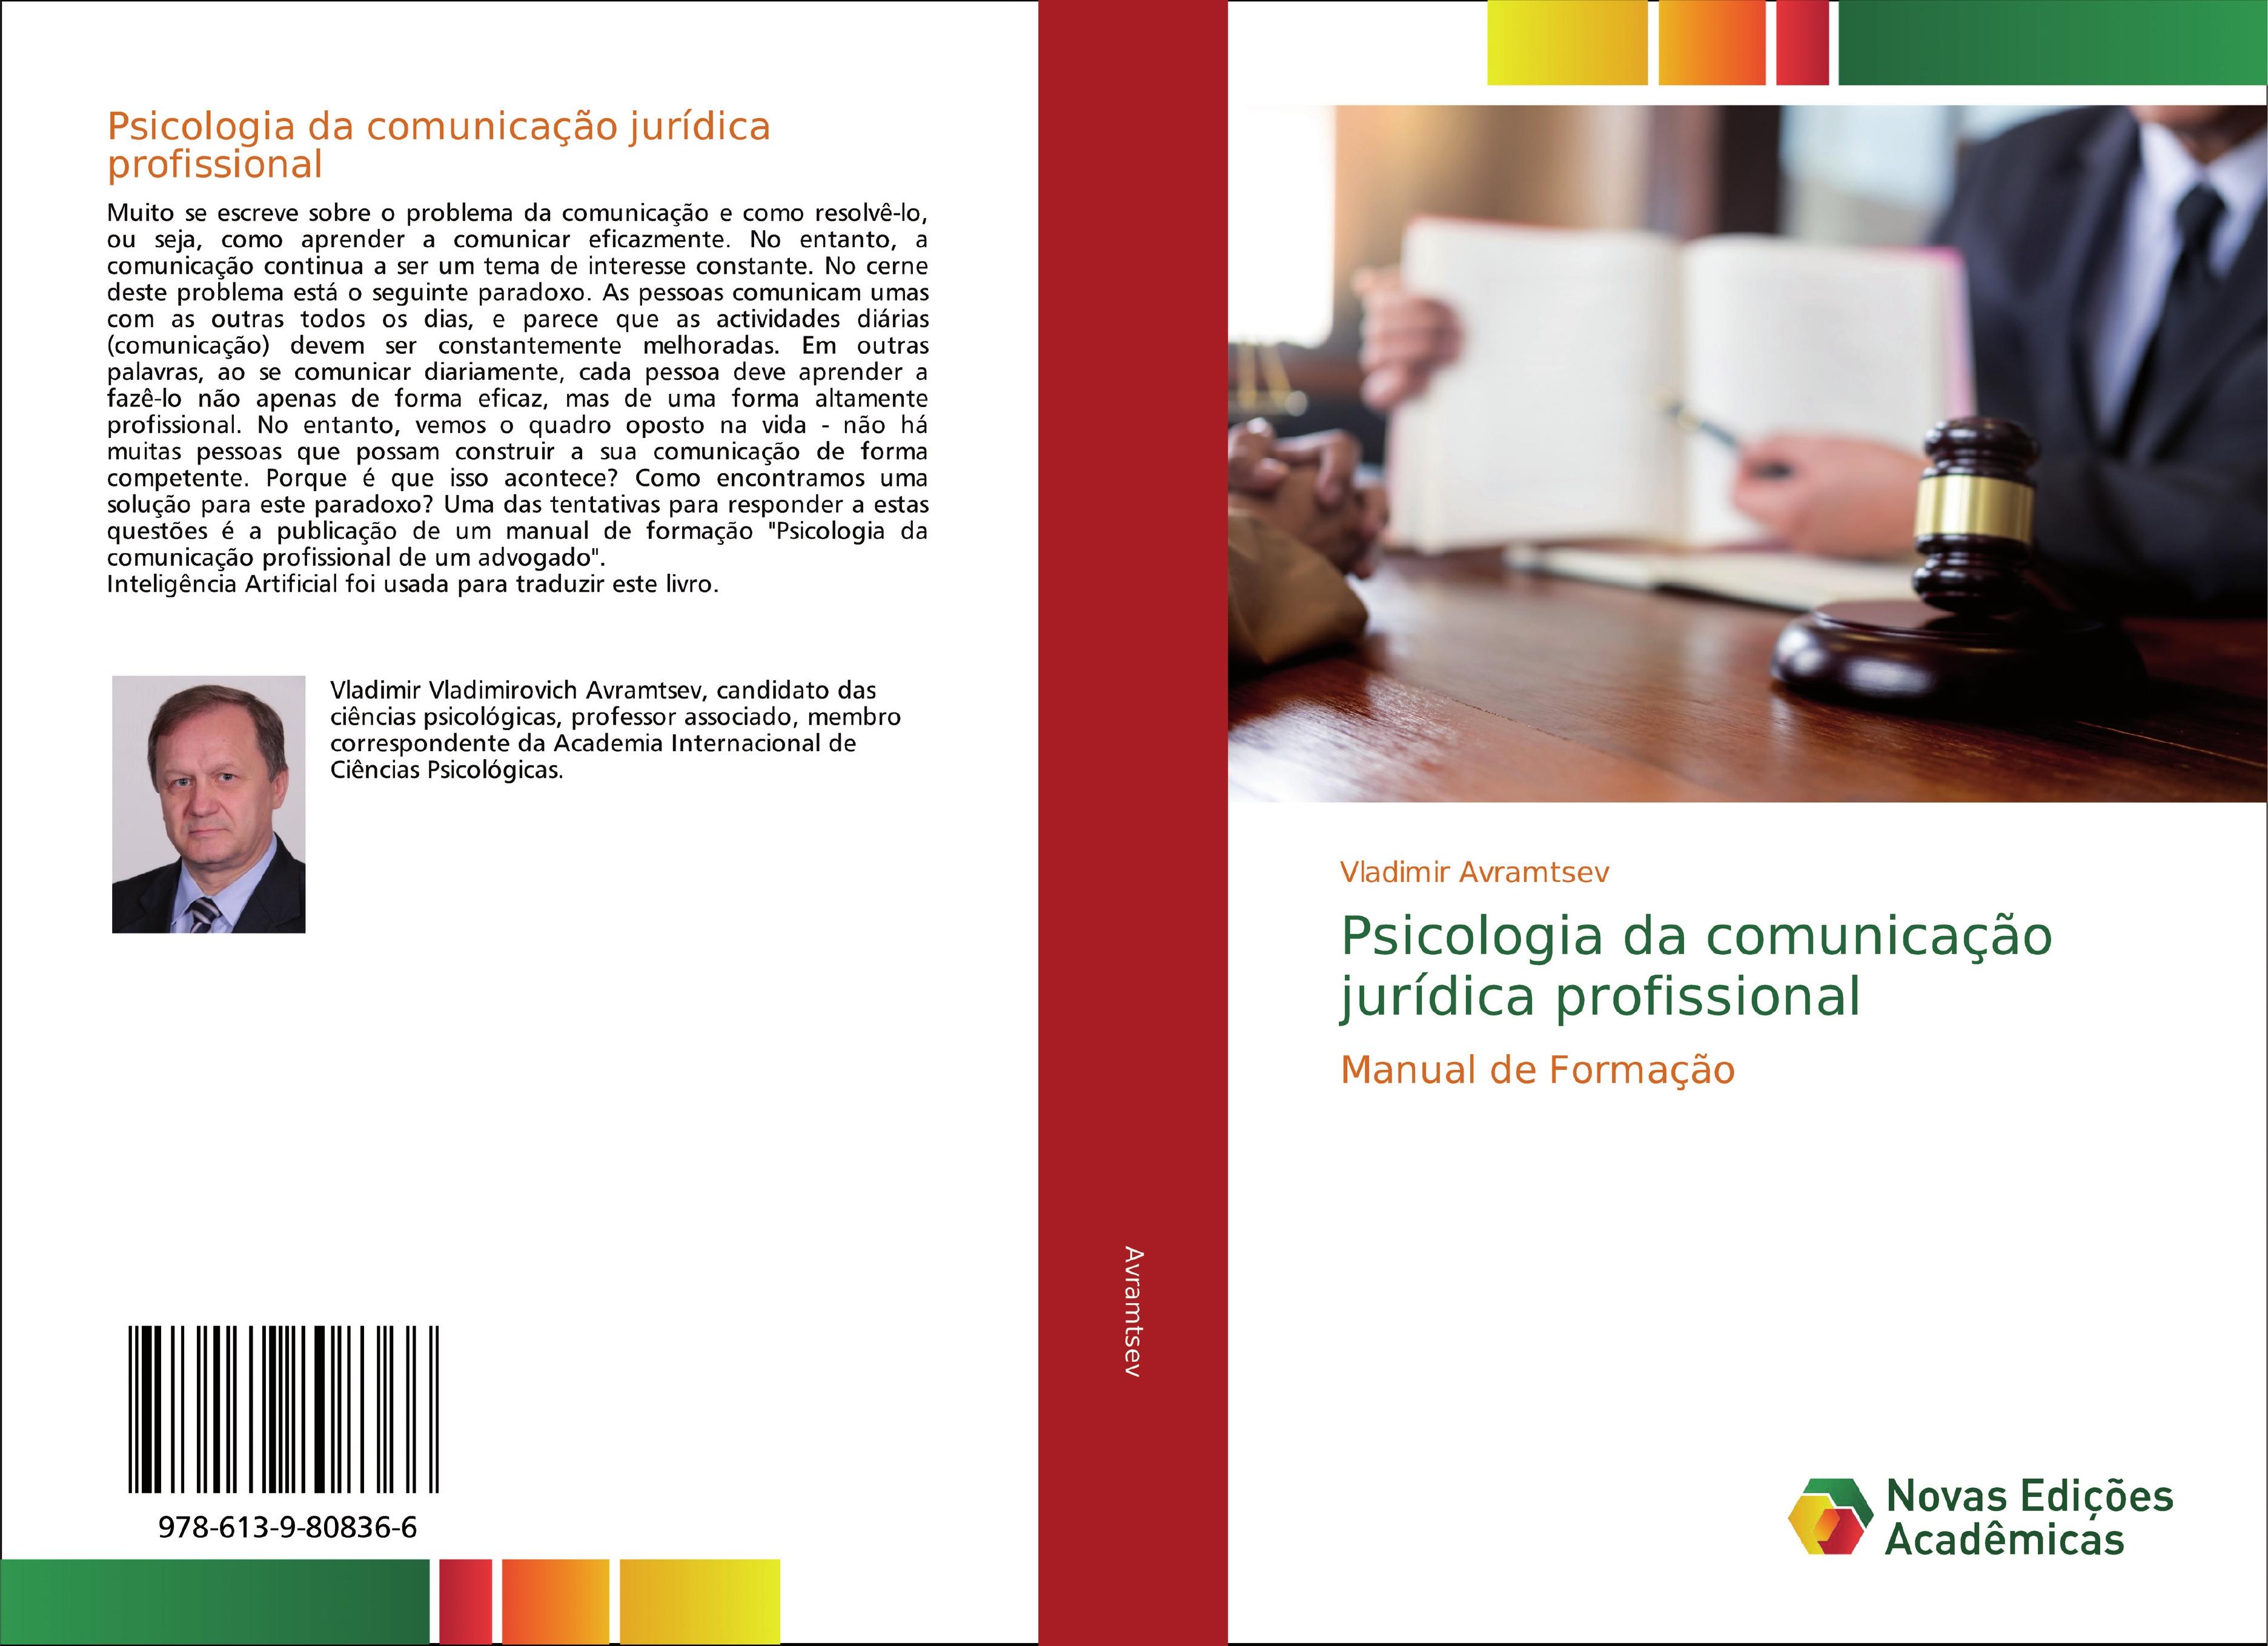 Psicologia da comunicação jurídica profissional  Manual de Formação  Vladimir Avramtsev  Taschenbuch  Paperback  Portugiesisch  2020 - Avramtsev, Vladimir